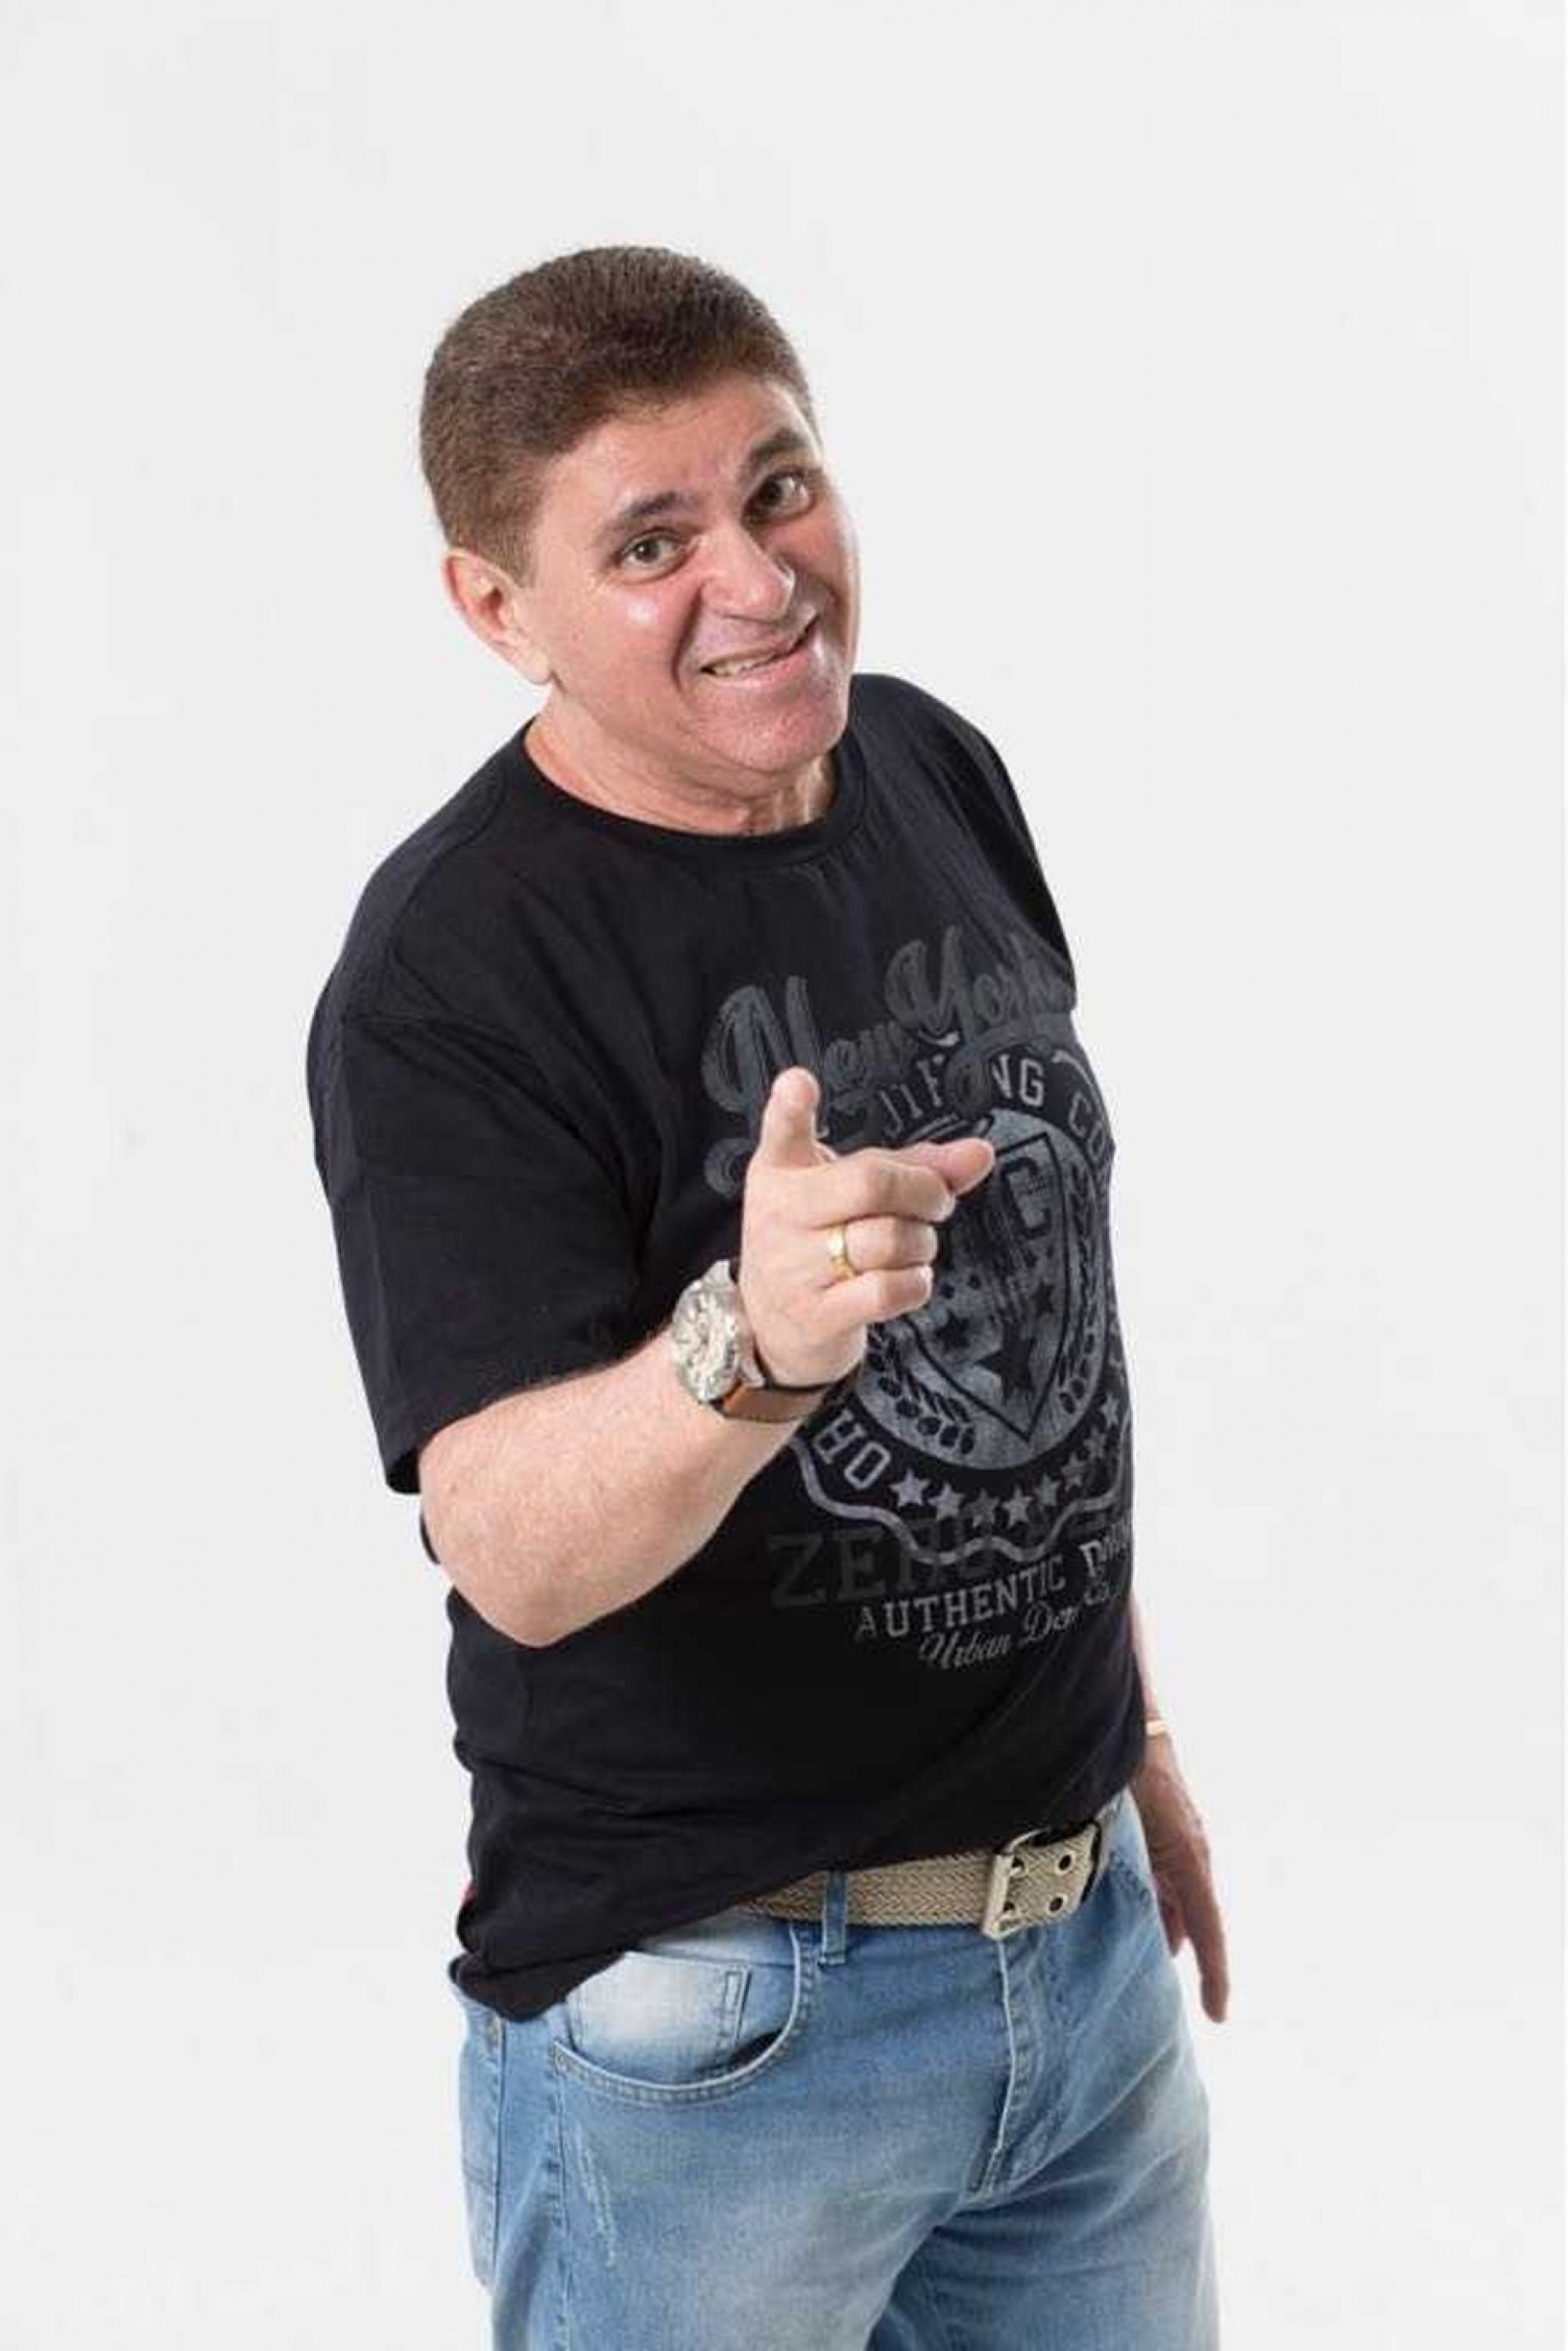 Morre o humorista Batoré, aos 61 anos, em São Paulo.